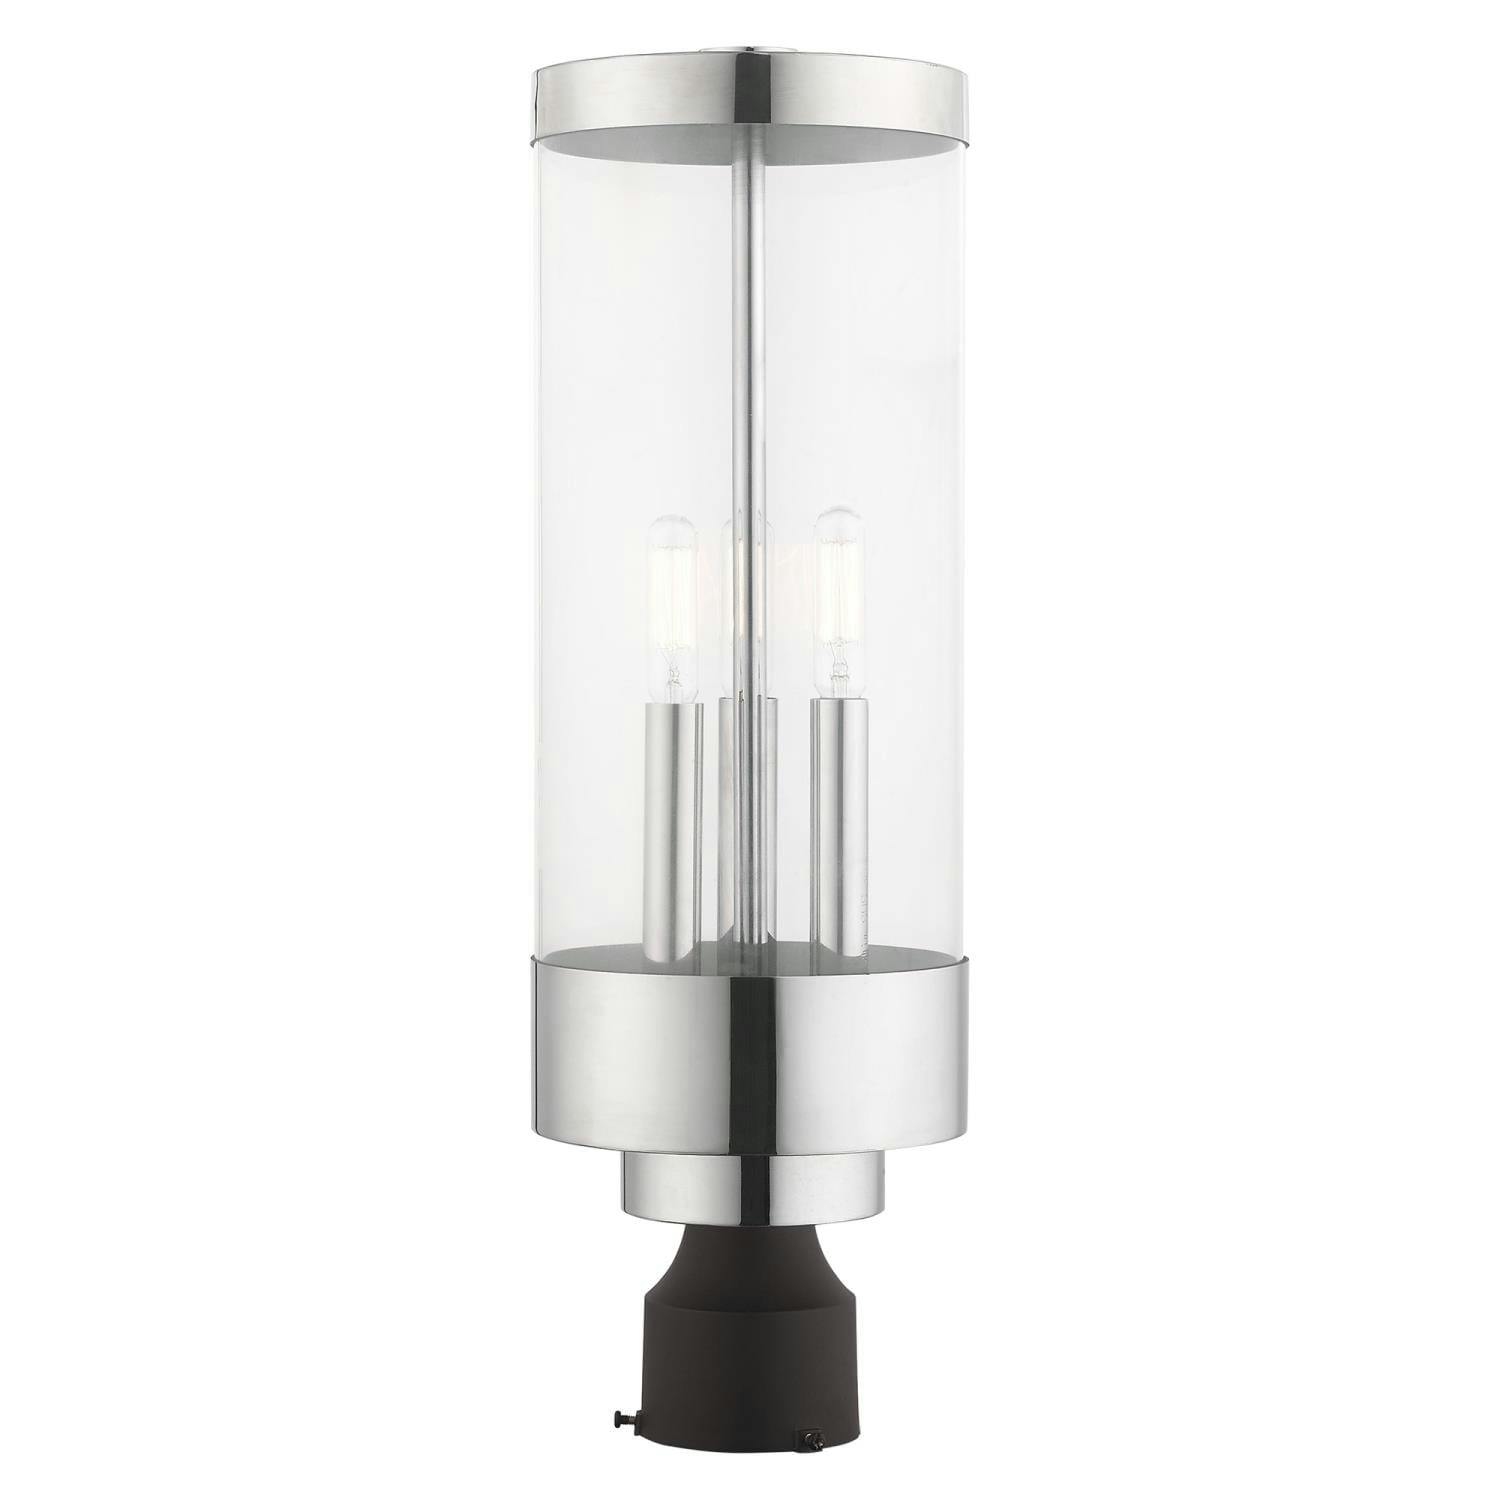 Hillcrest Elegance 3-Light Polished Chrome Outdoor Post Lantern